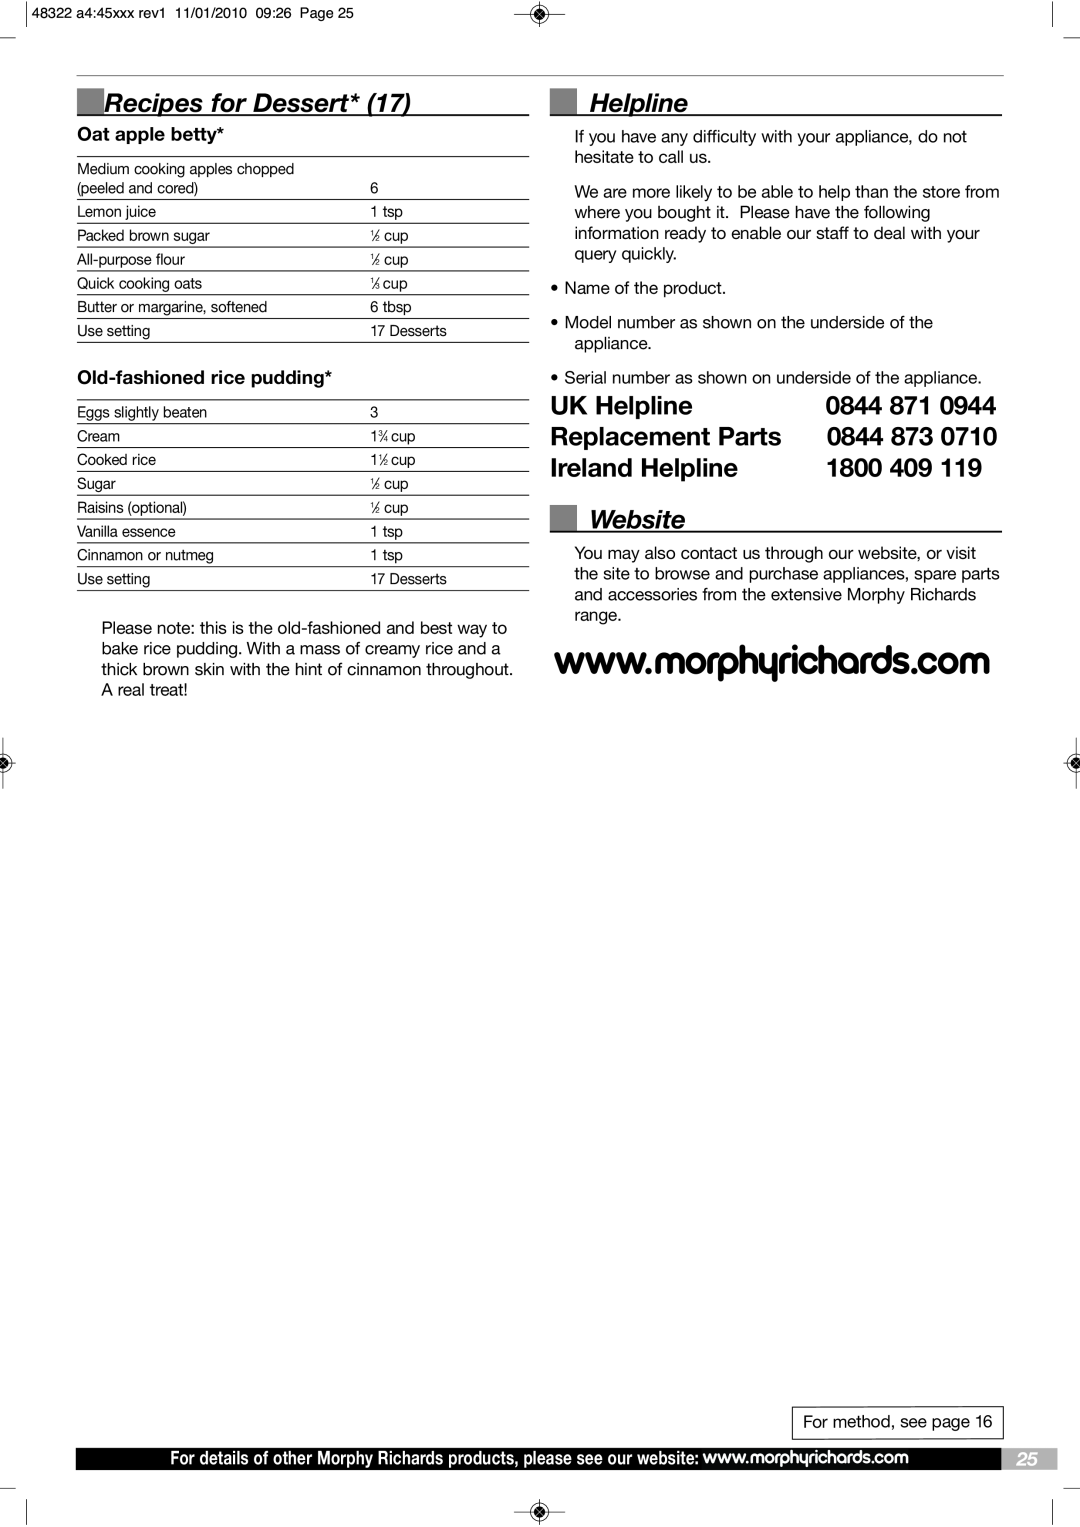 Morphy Richards BM48322 Recipes for Dessert, Website, UK Helpline, Replacement Parts, 0844, Ireland Helpline, 1800 